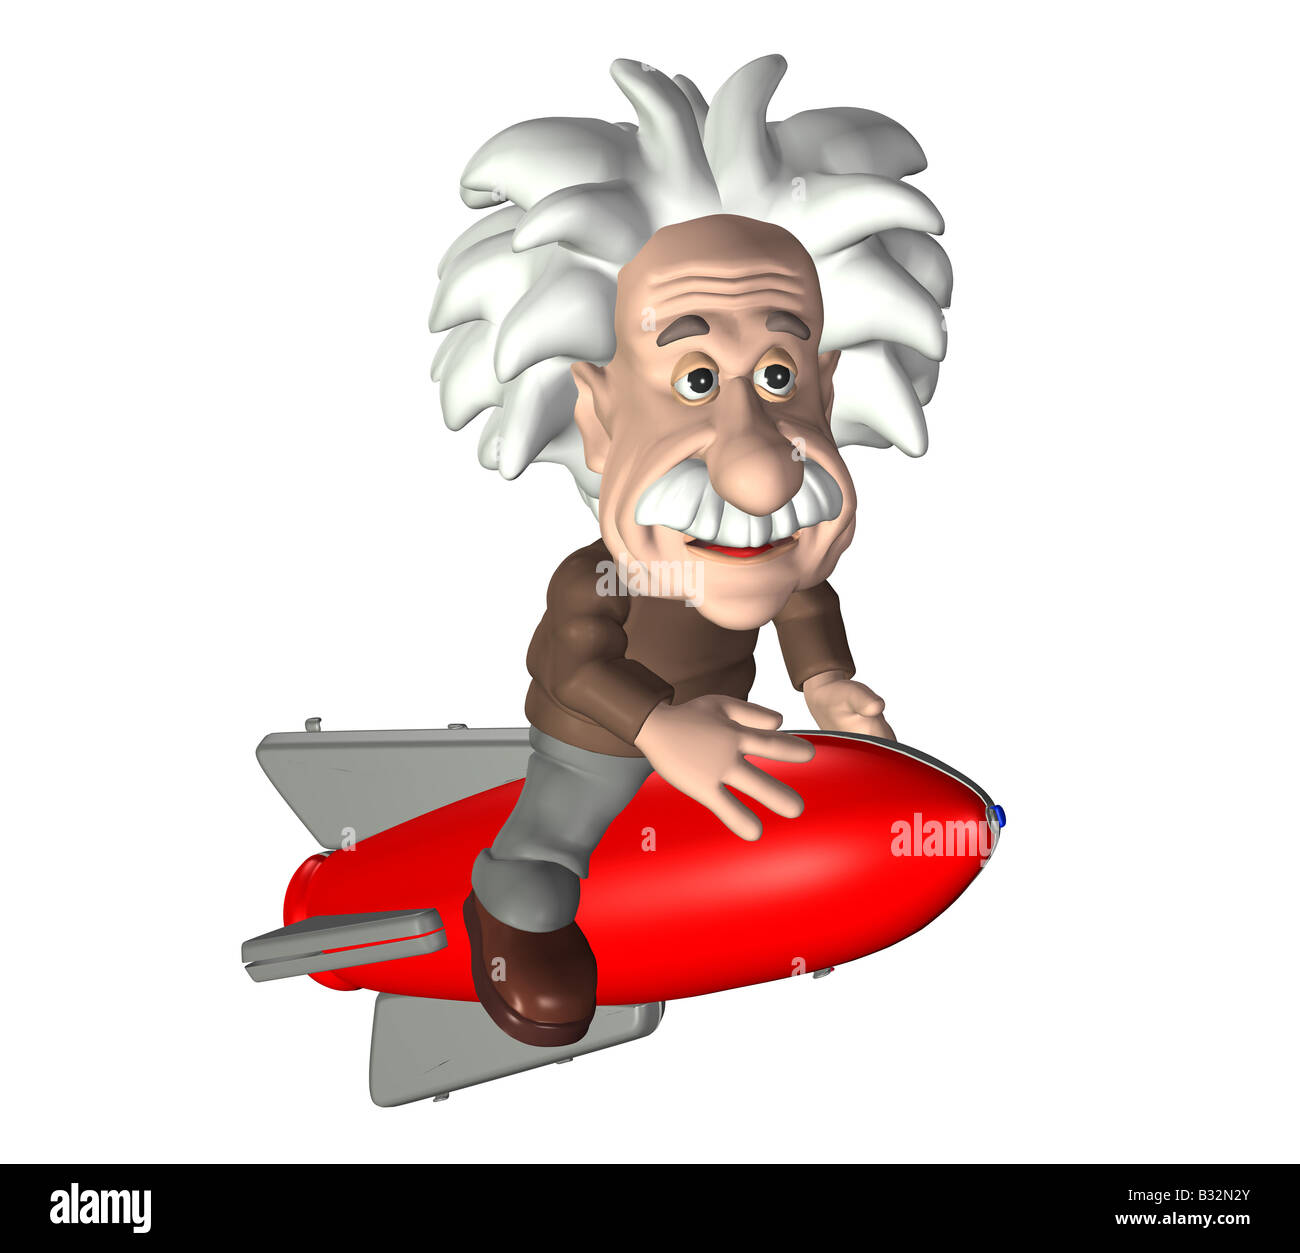 Albert Einstein with a rocket Stock Photo